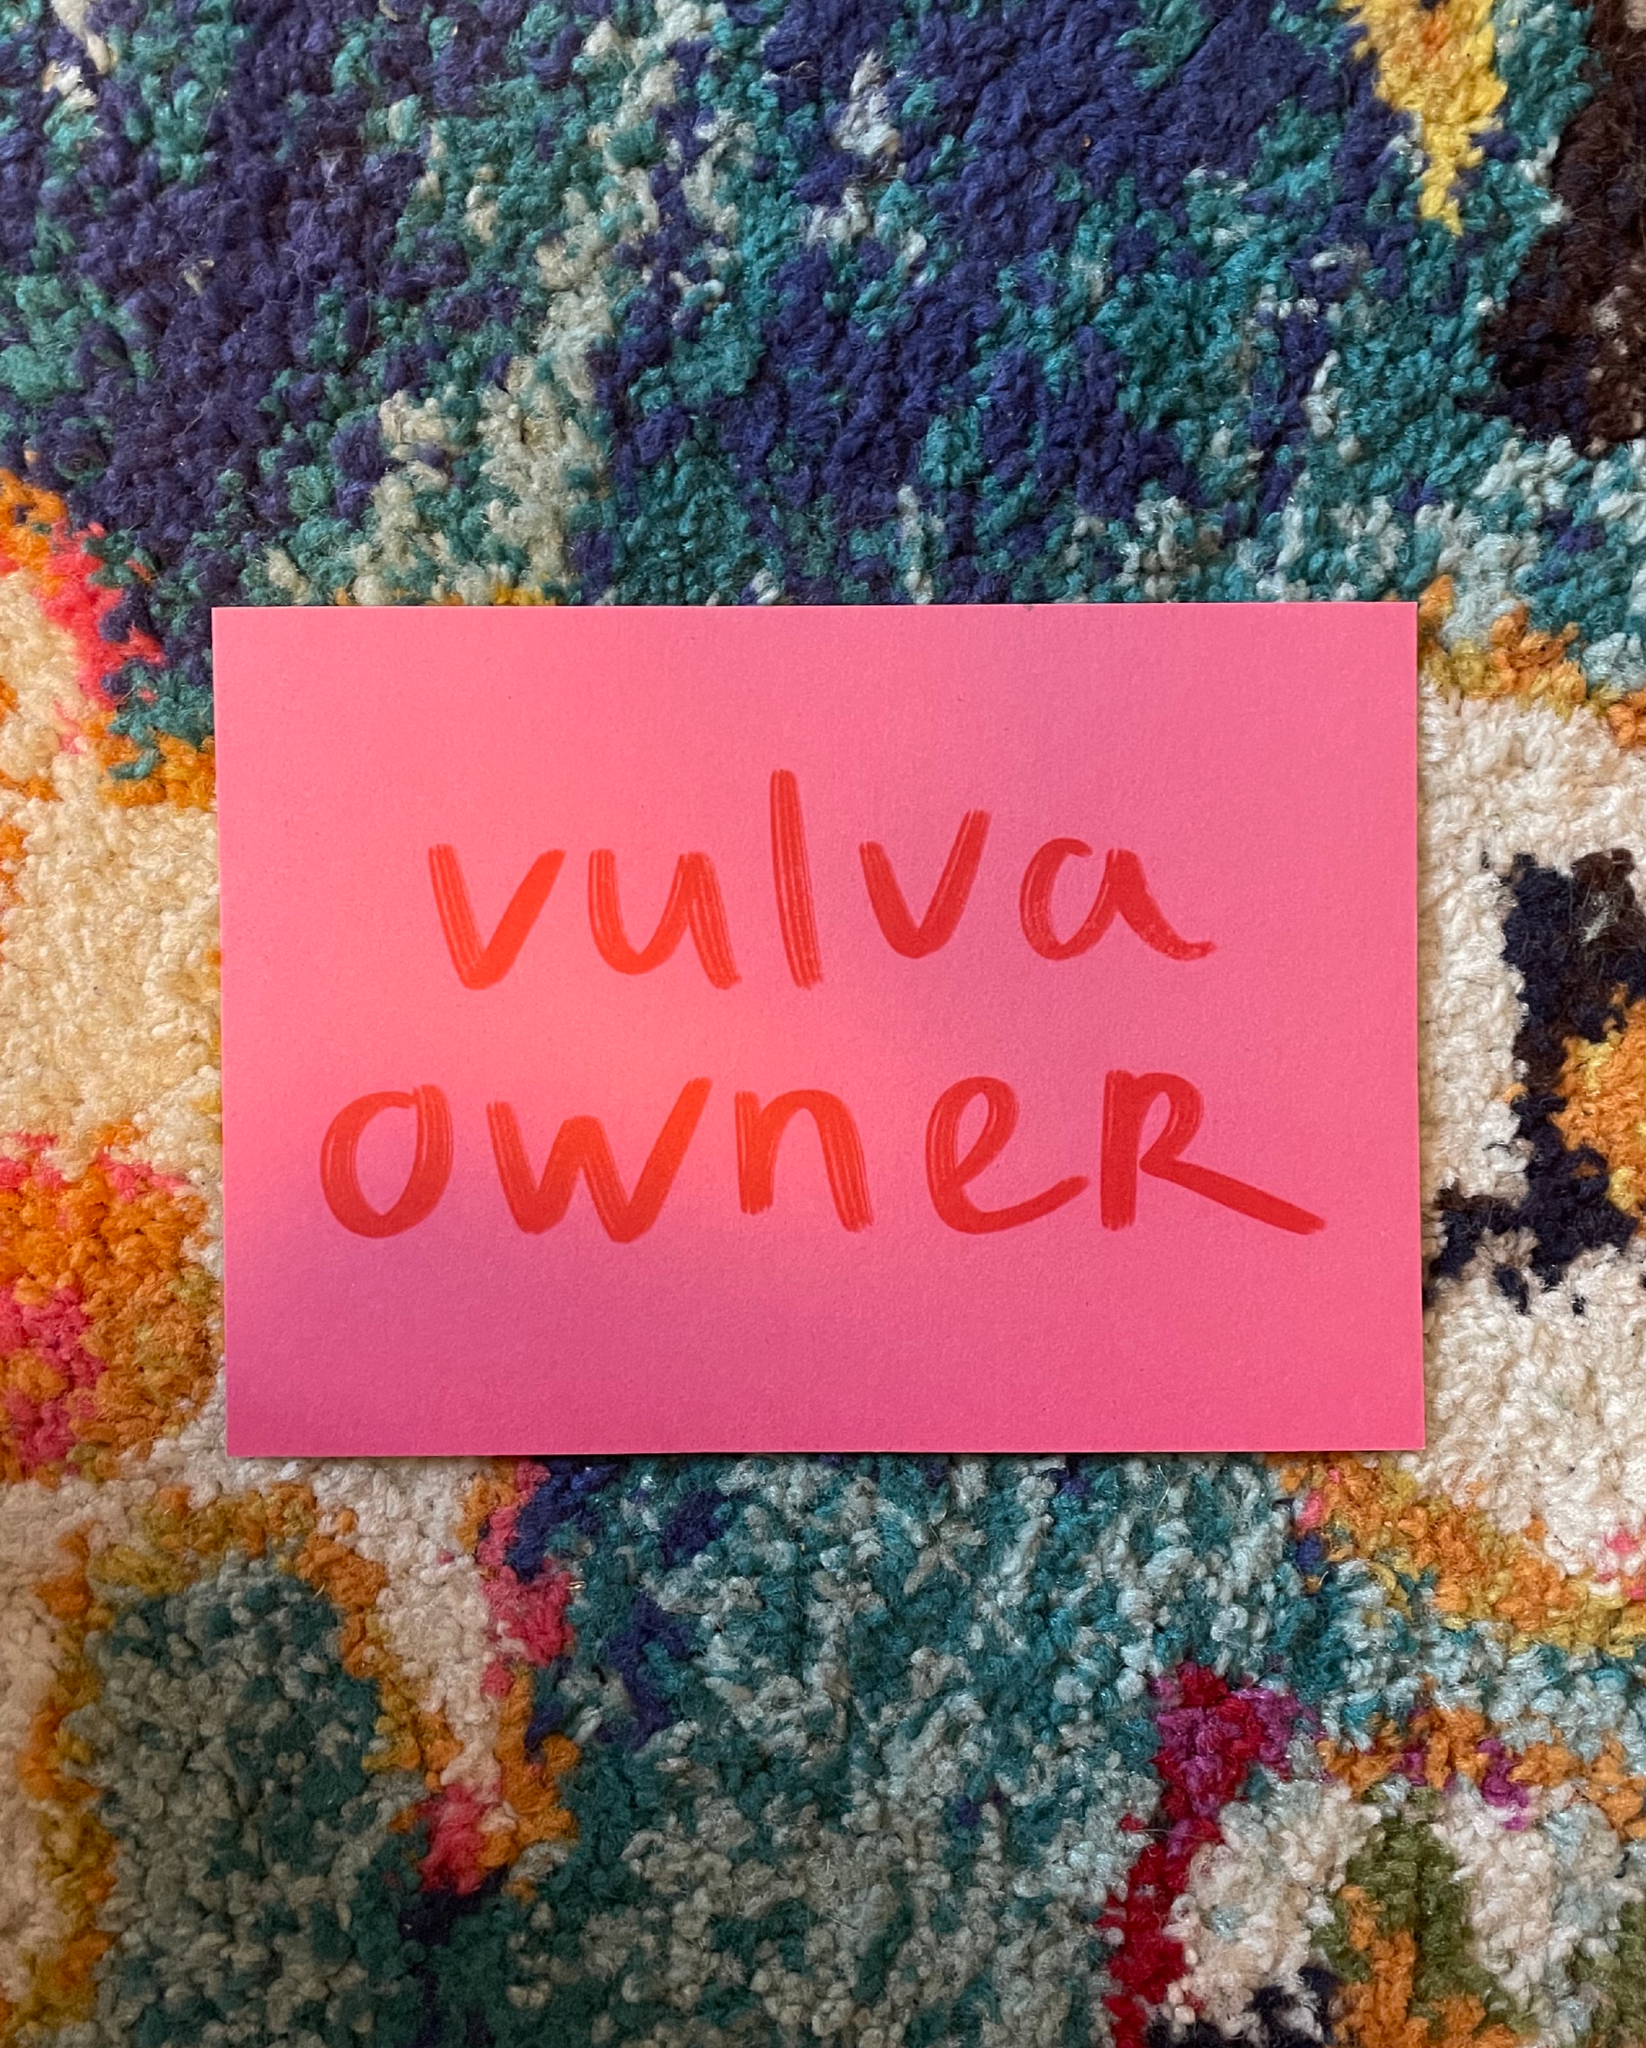 Vulva owner print (210x148mm)